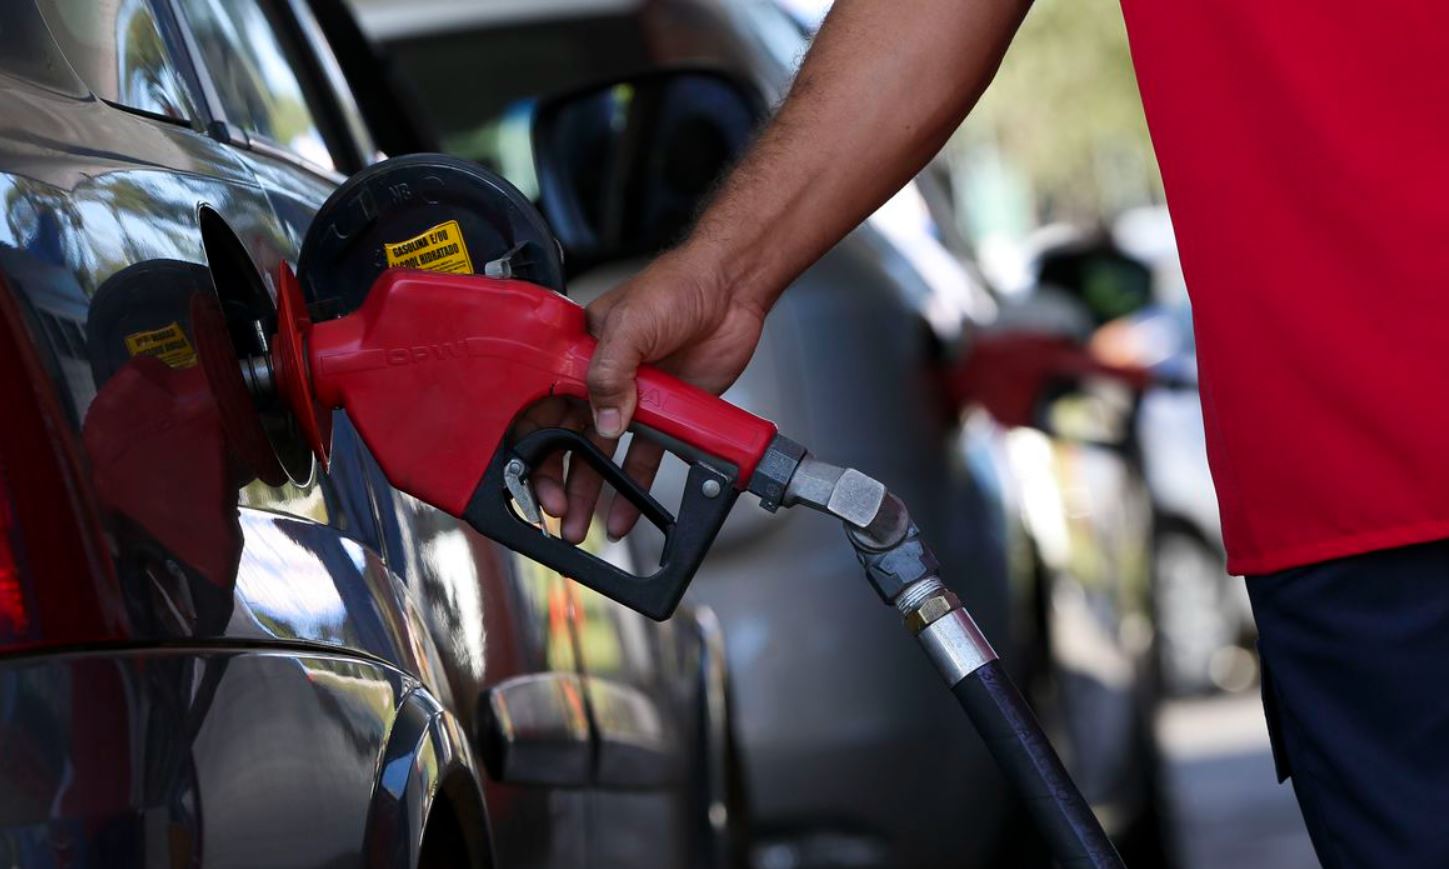 O preço da gasolina terá queda de 5%, enquanto para o diesel (S10 e S500), a redução será de 4%. Os novos valores passam a vigorar a partir de amanhã (27).